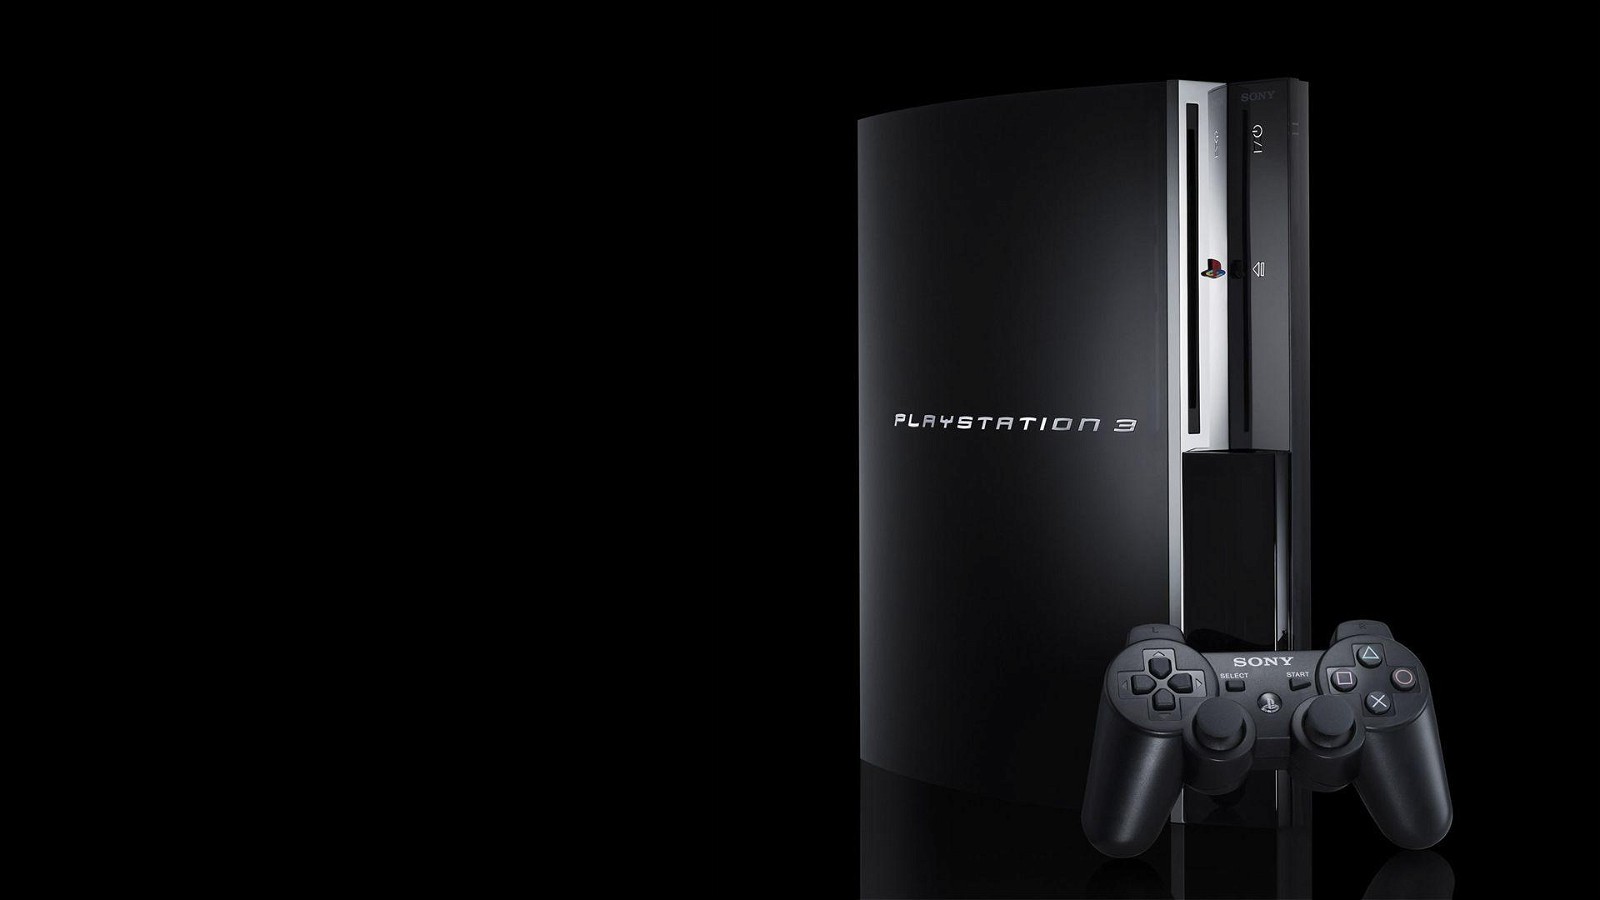 Rumor: PlayStation Showcase September Date Leaked